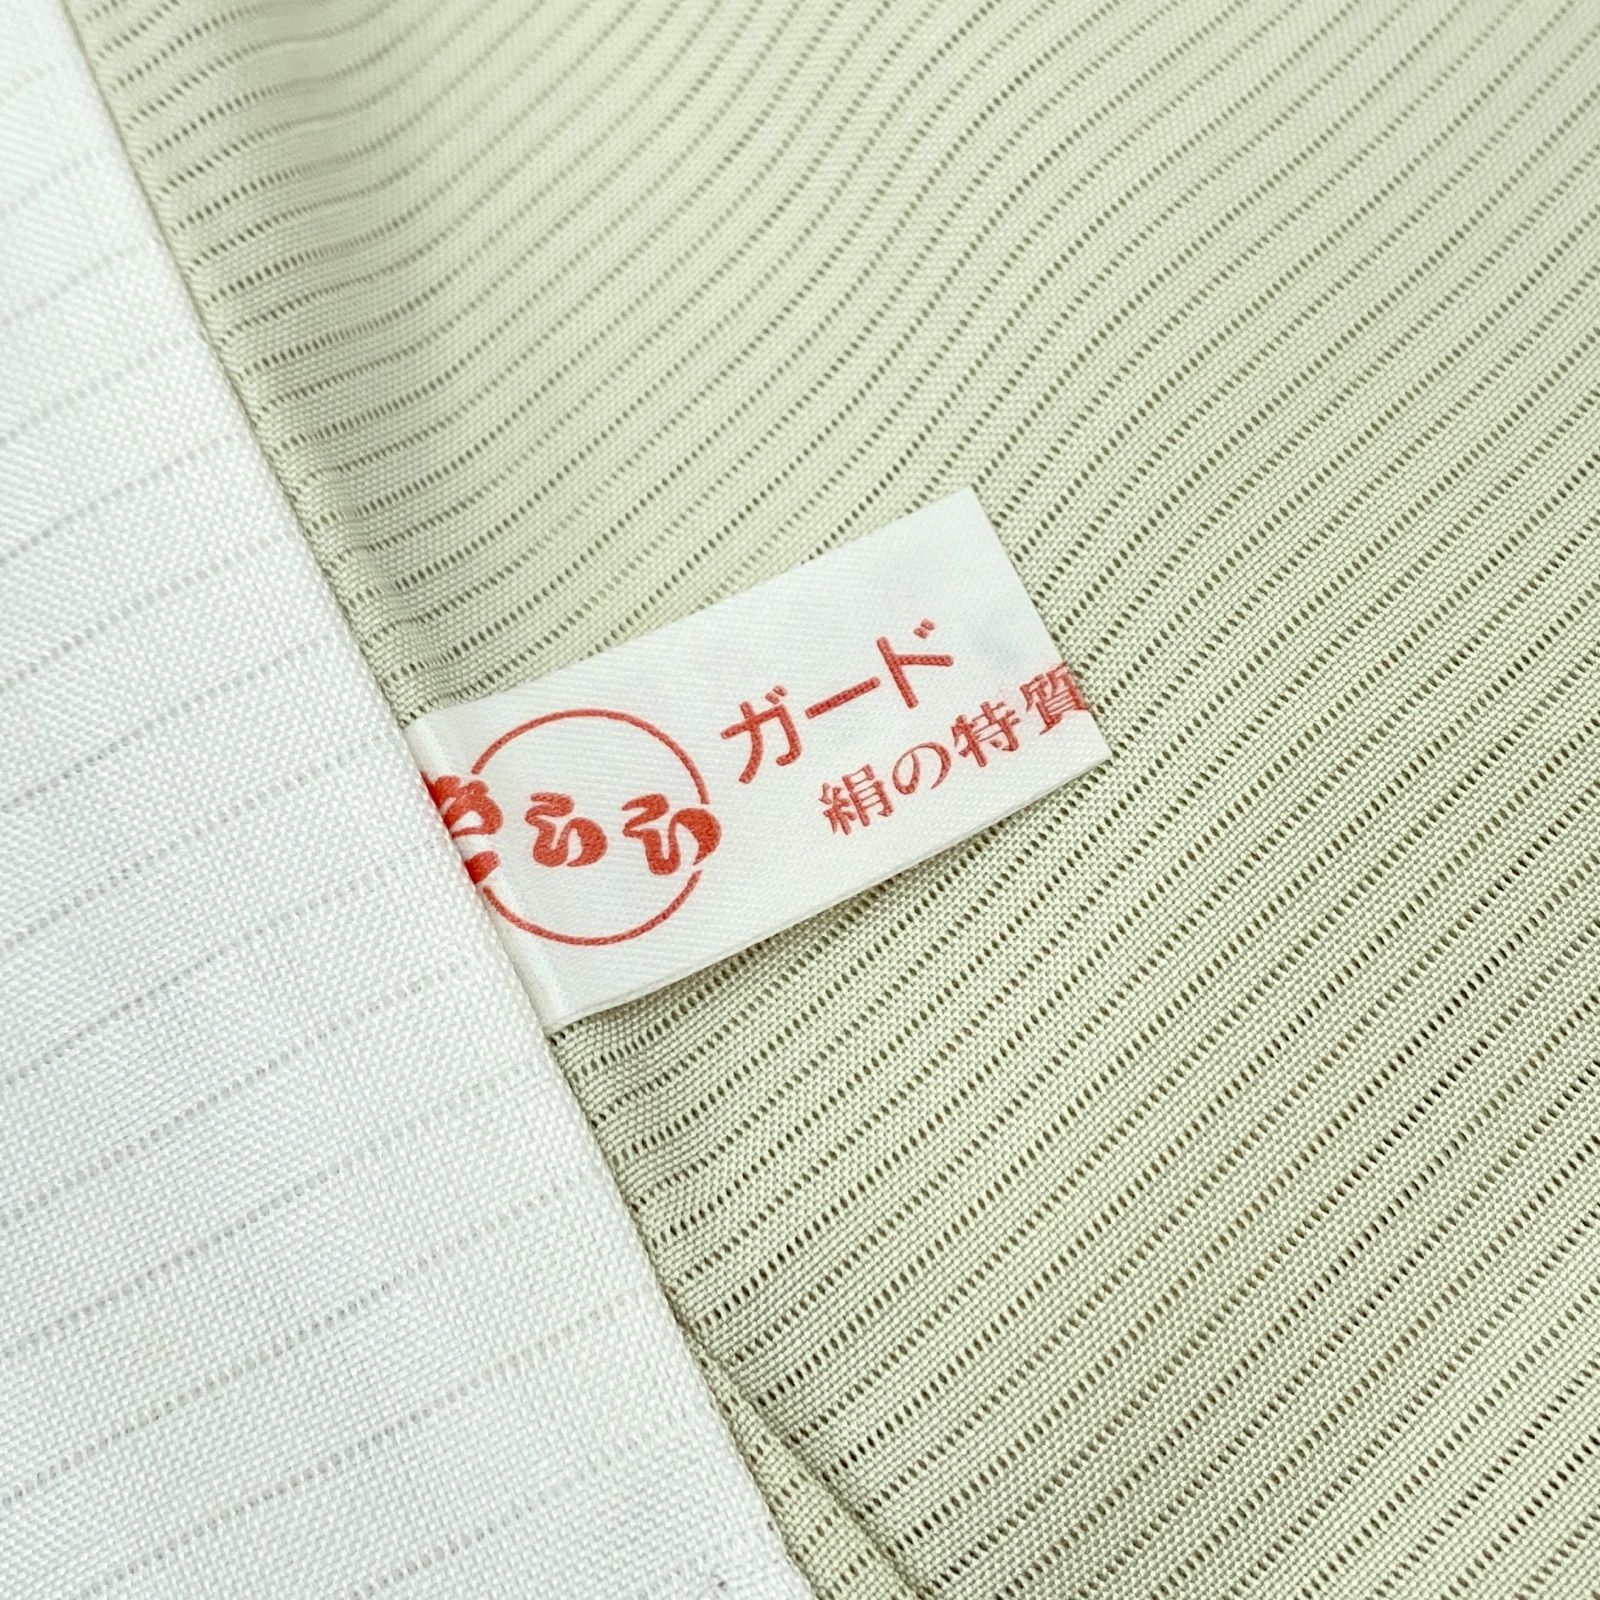 販売中です kf-366 夏物 美品 逸品 上品 飛び柄 総刺繍 正絹 小紋 ...